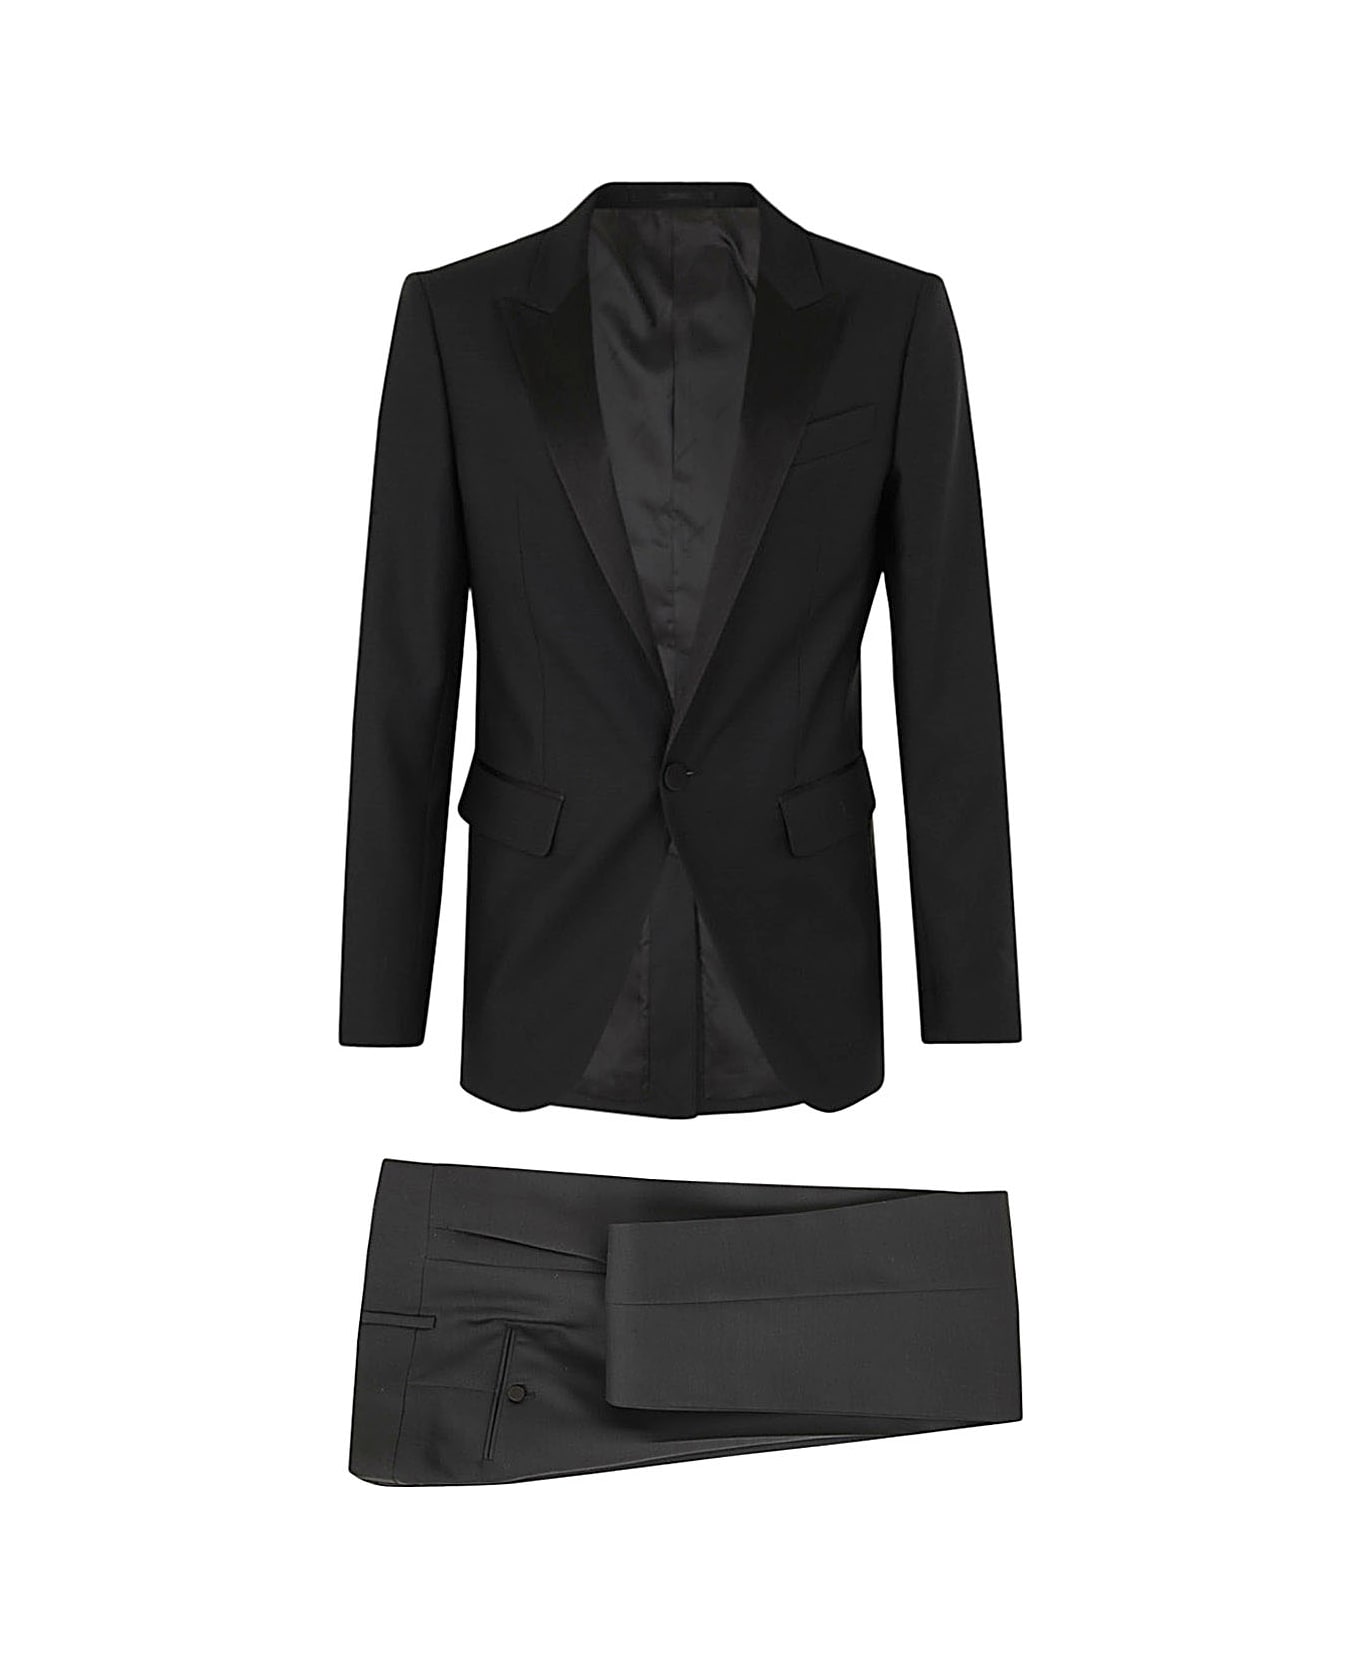 Dsquared2 Berlin Suit - Black